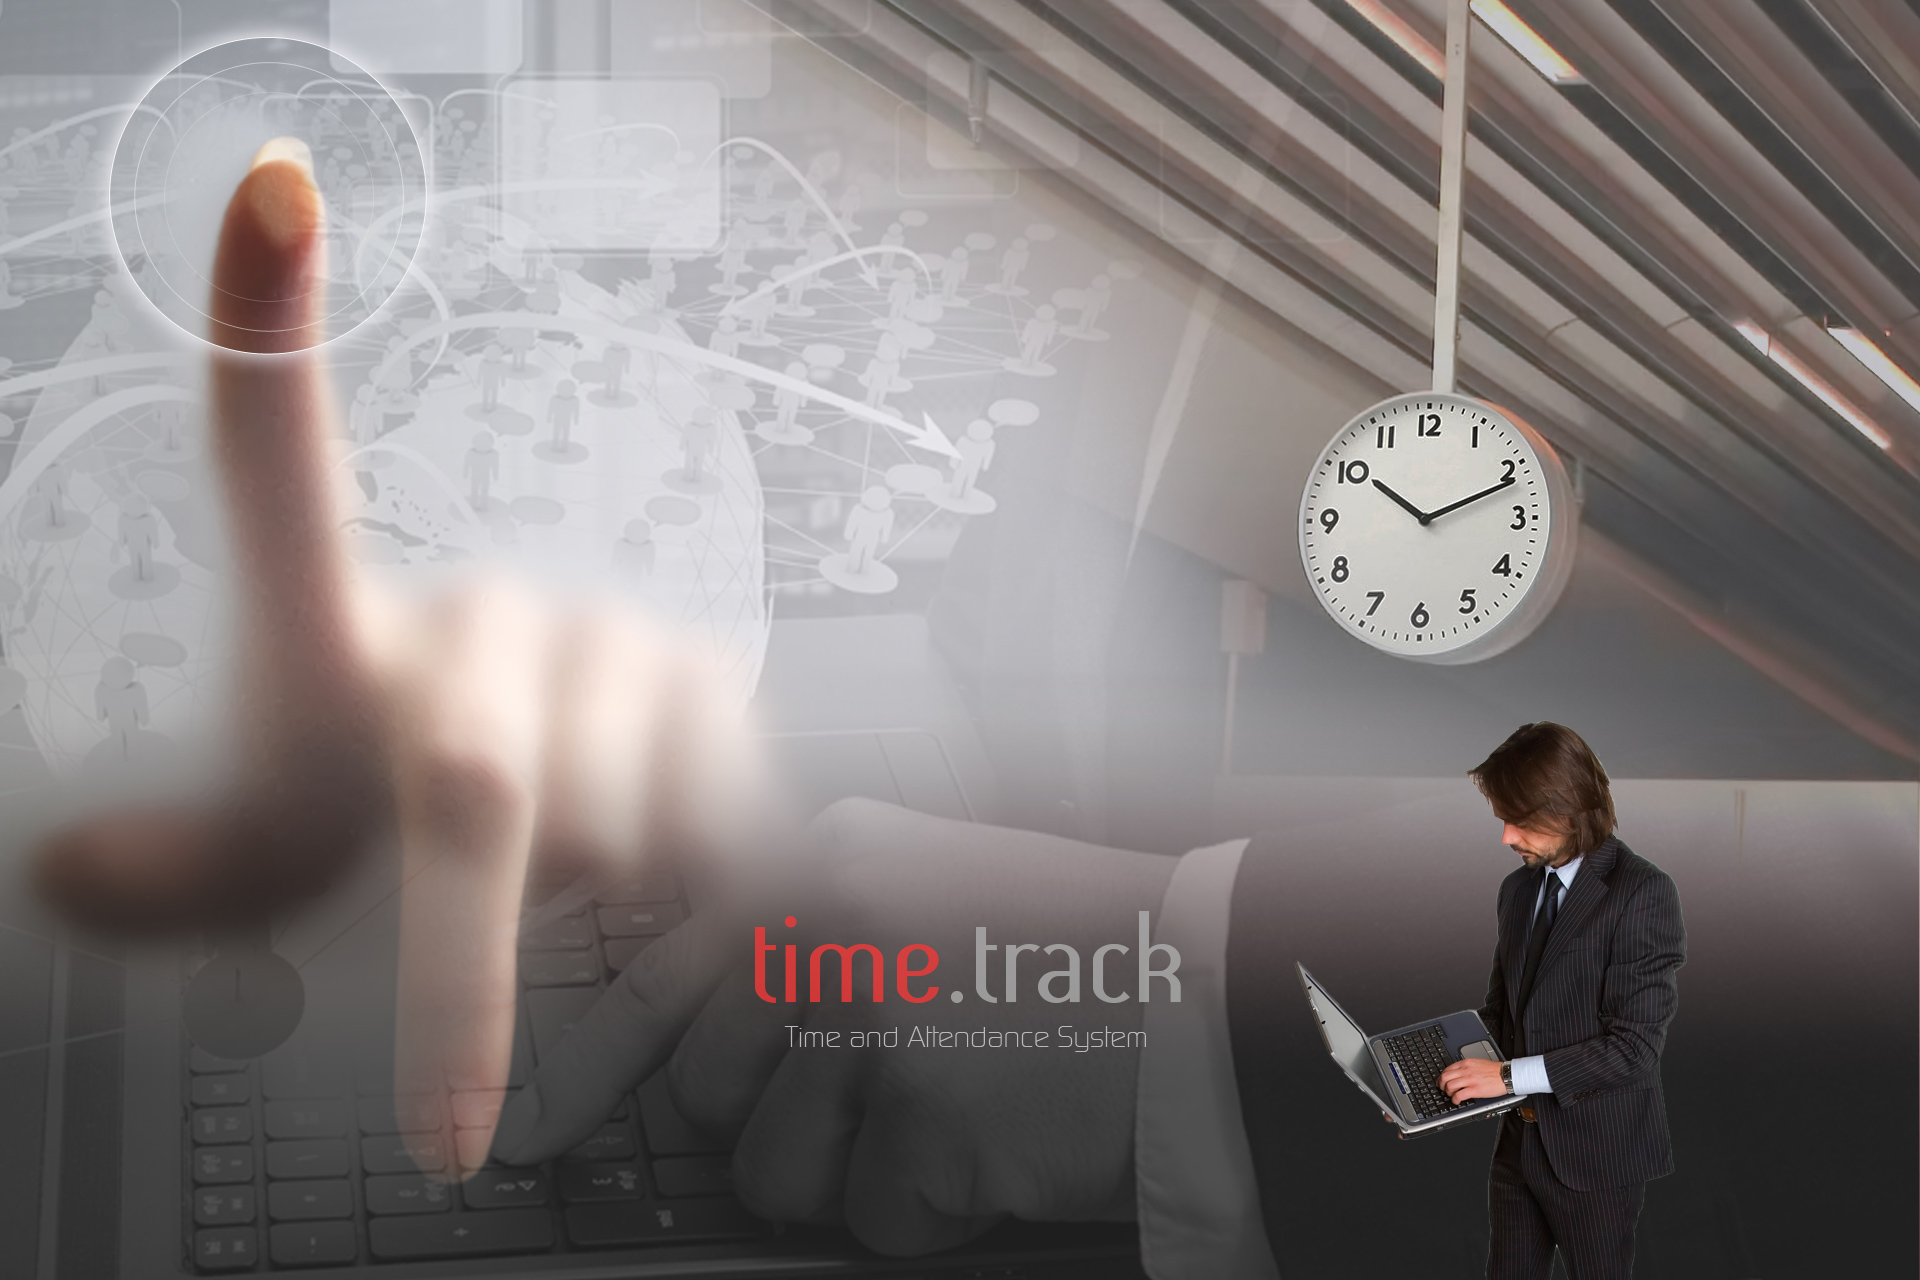 Software de Gestão de assiduidade e Relógios de Ponto time.track